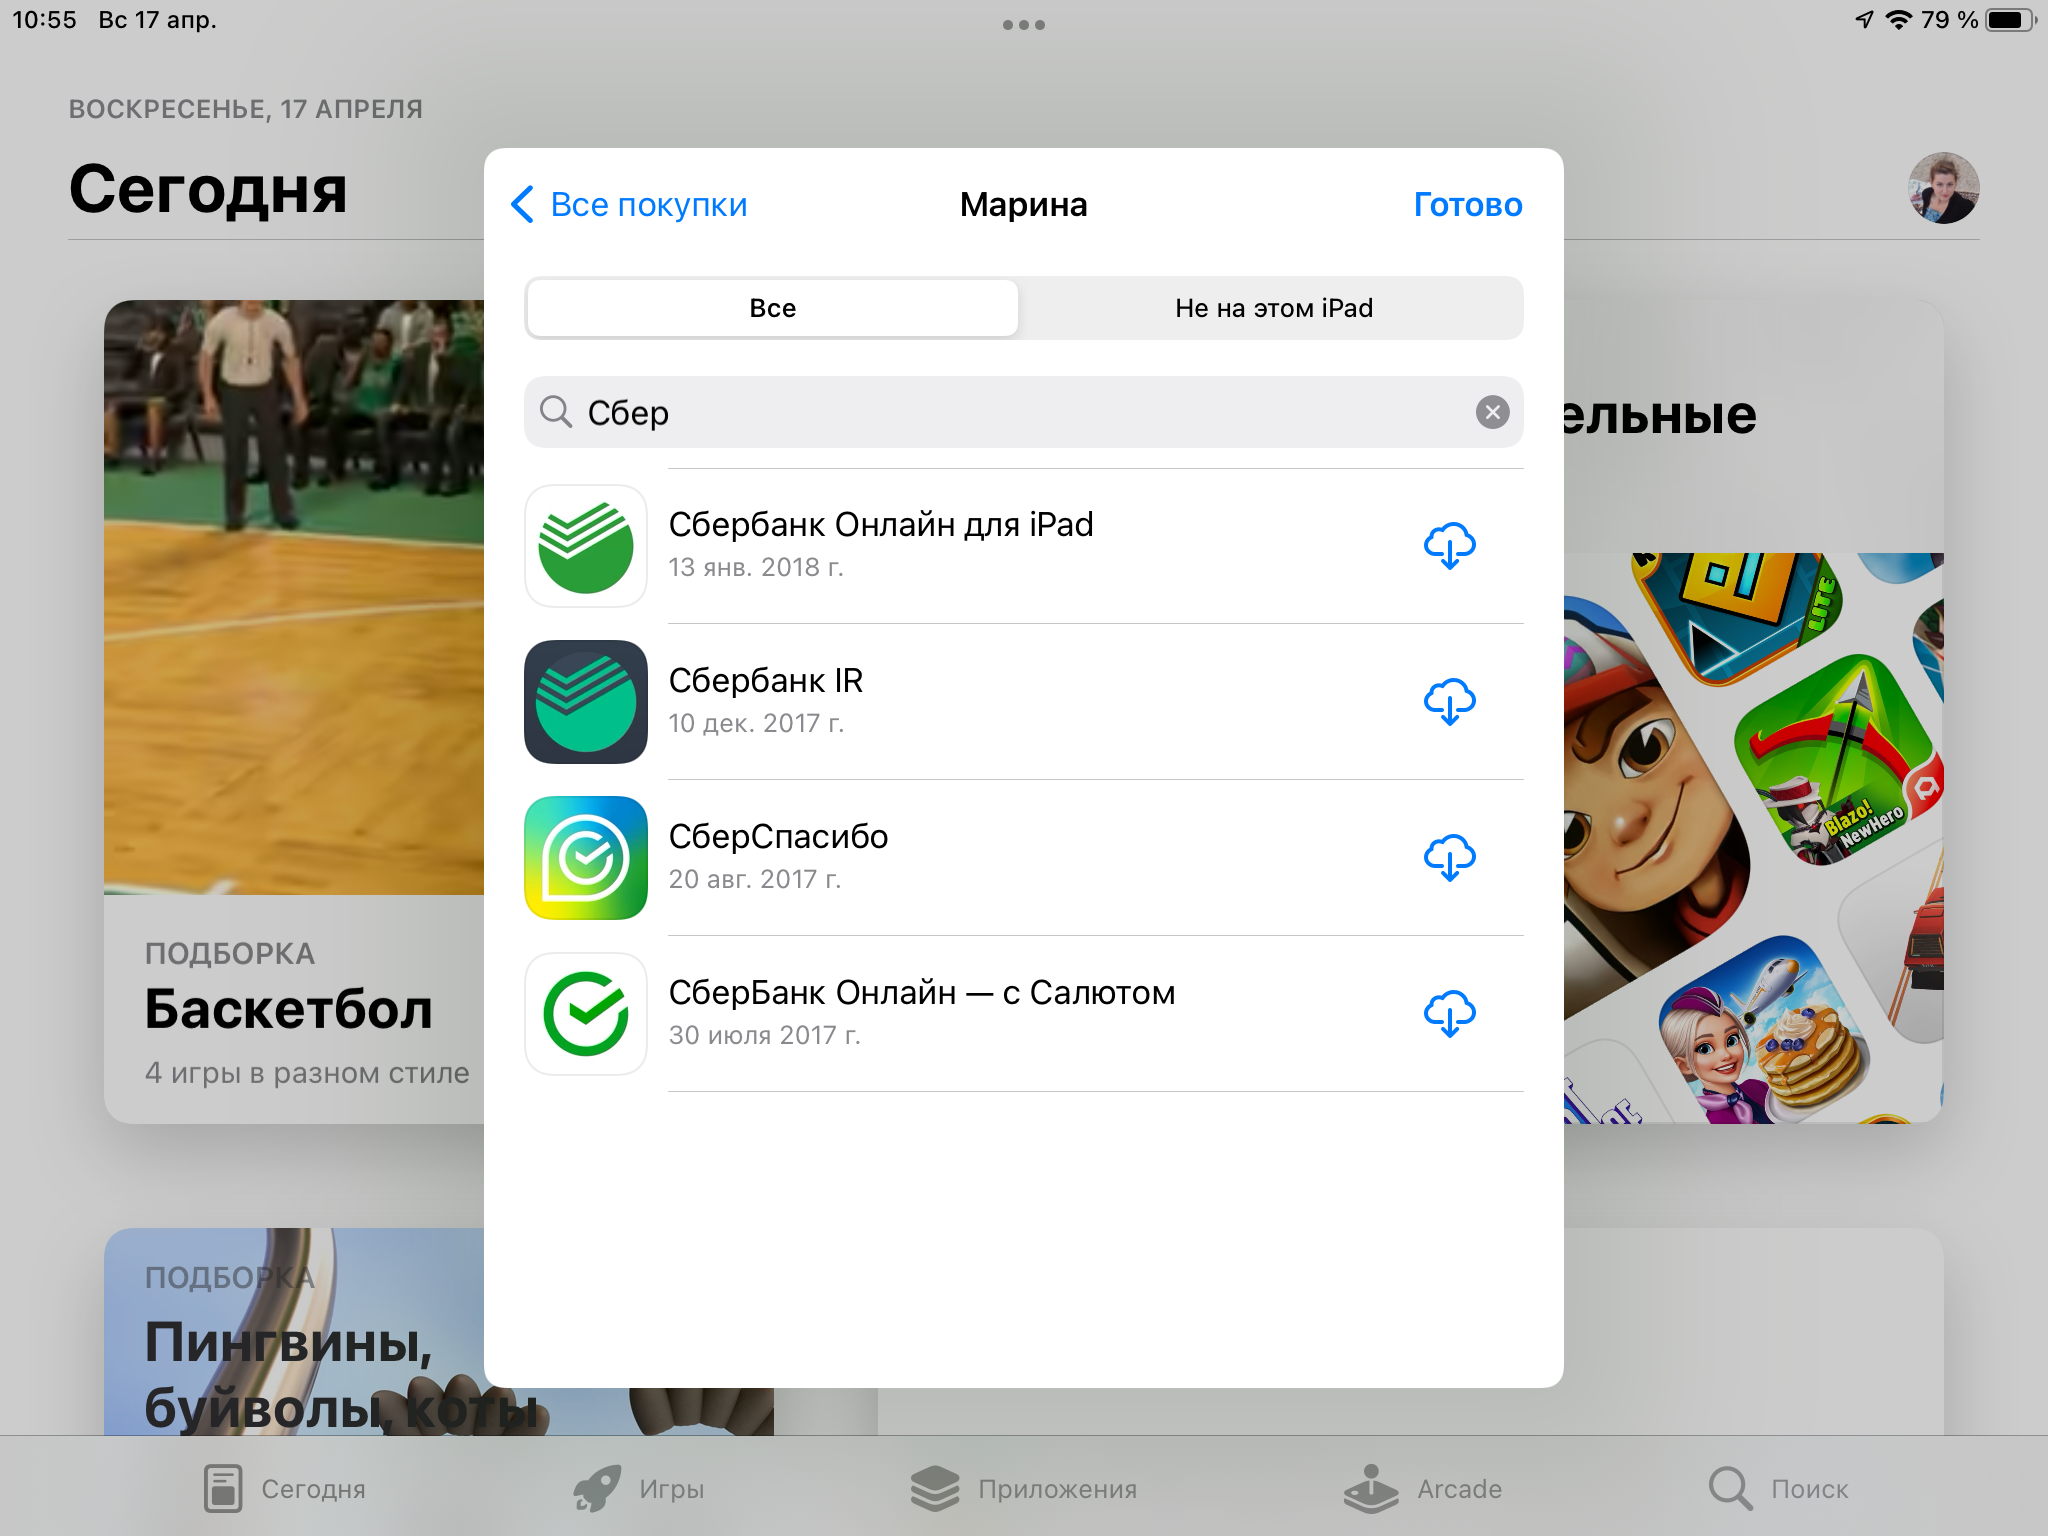 Обновить приложение телеграмм на андроиде бесплатно на русском языке фото 108